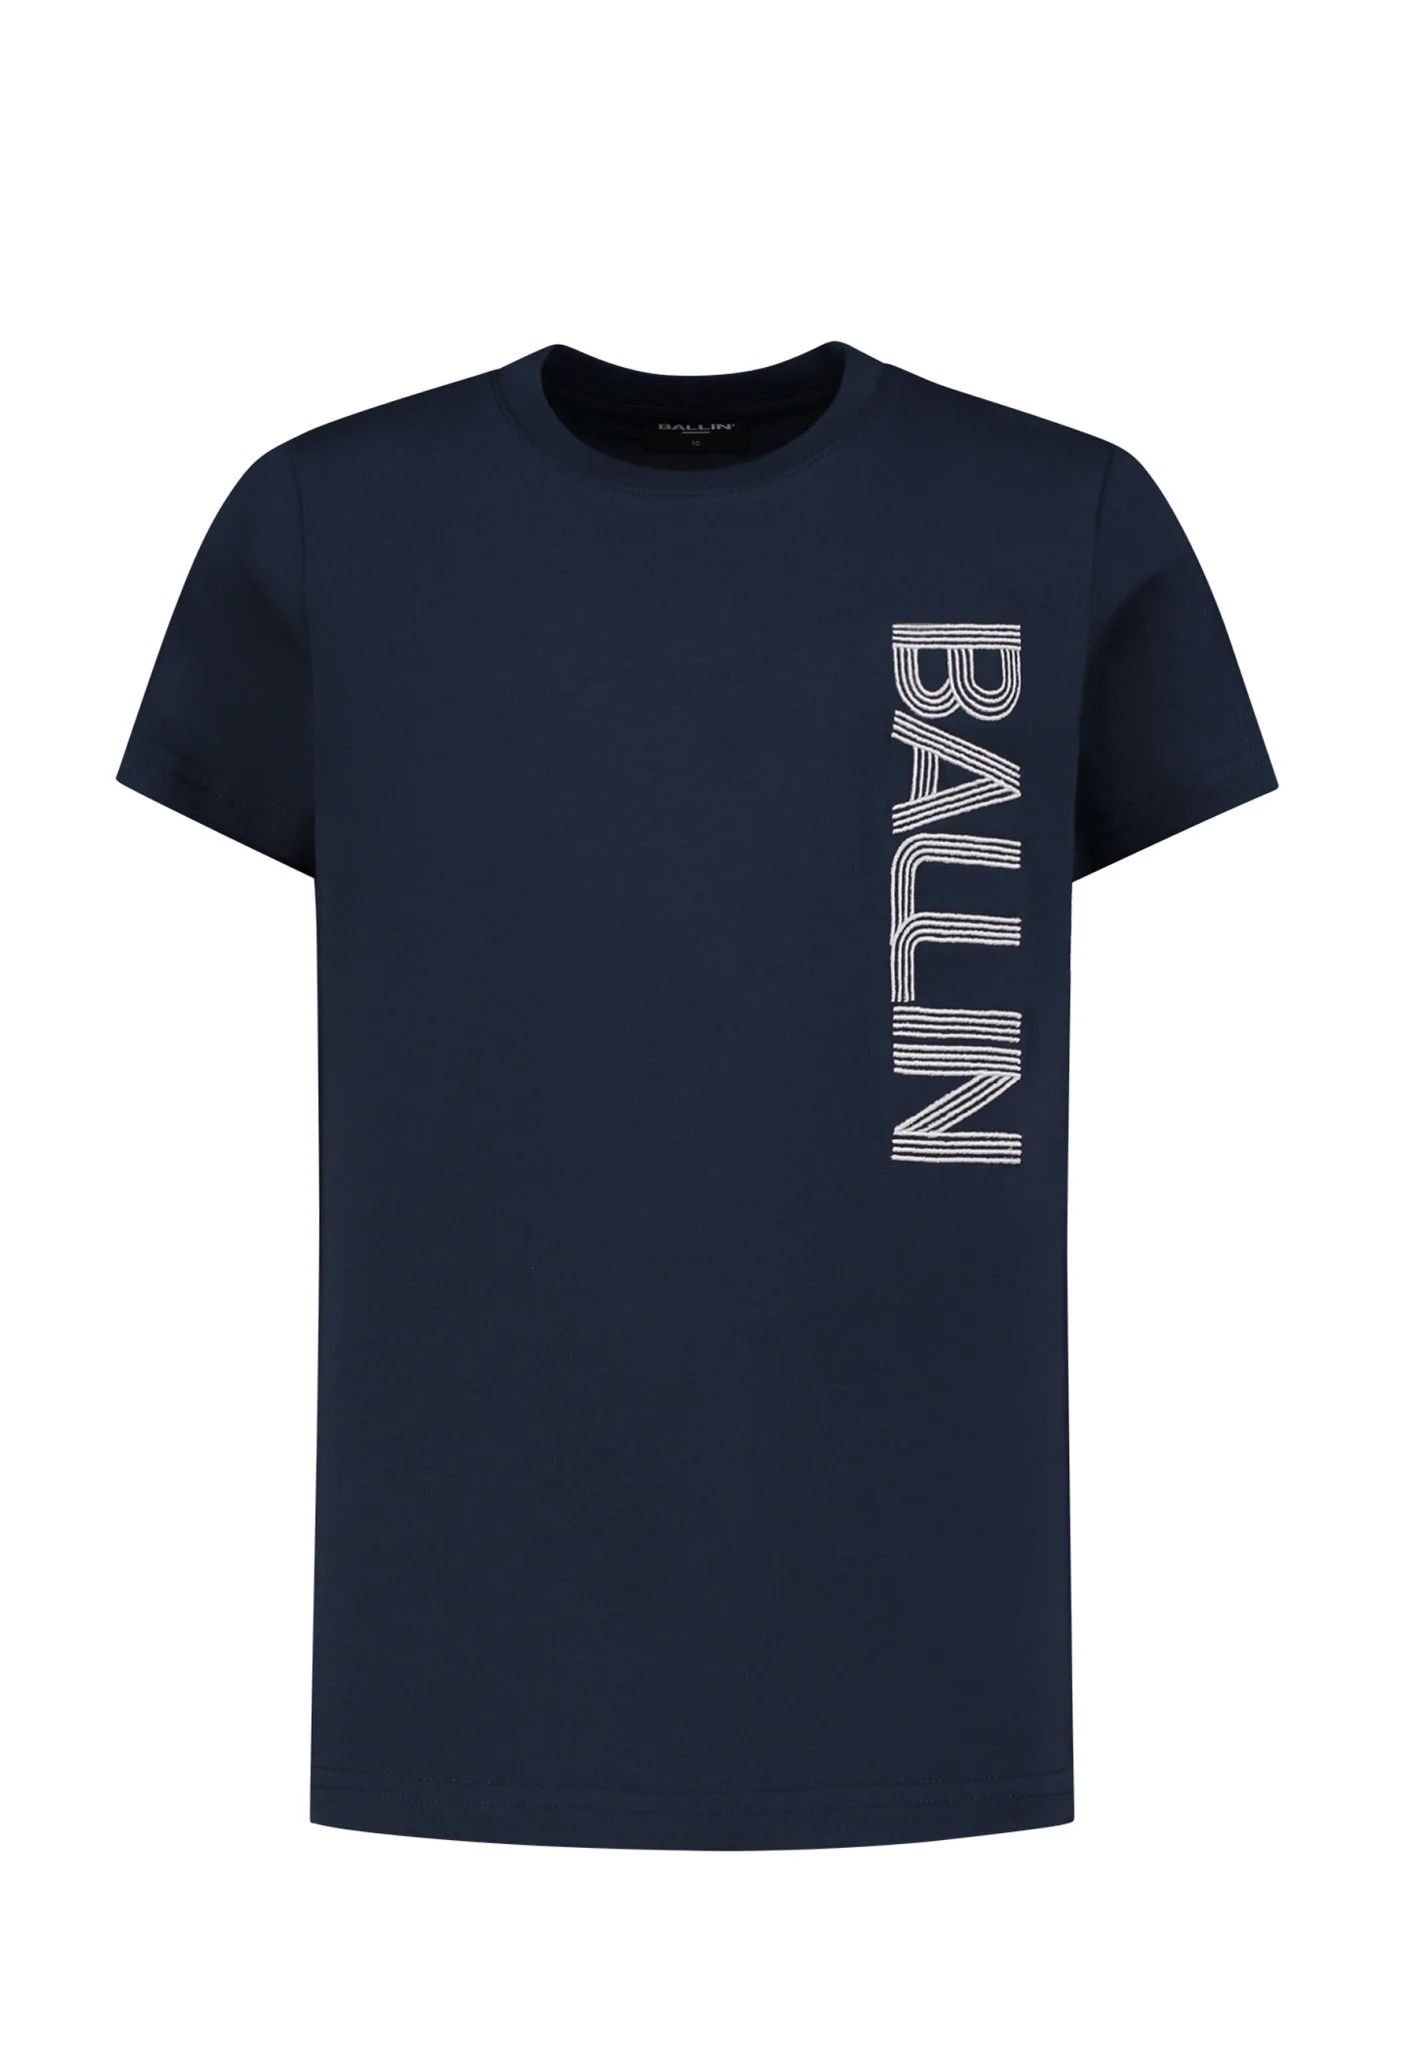 Afbeelding van Ballin Amsterdam Jongens t-shirt side logo navy